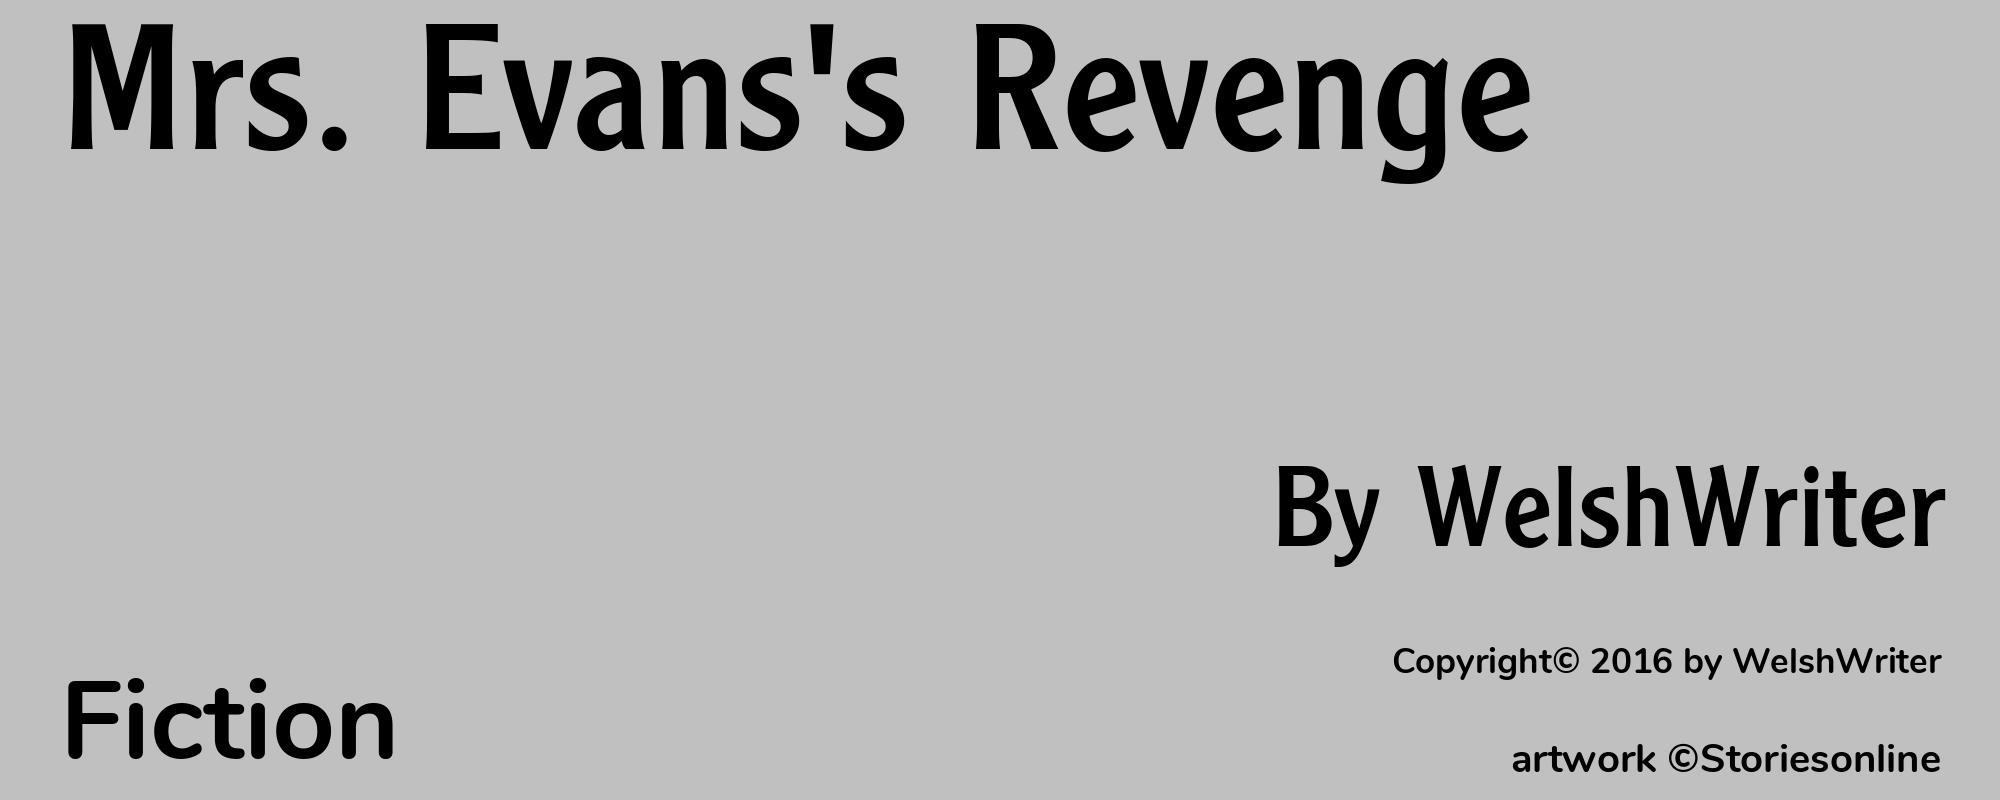 Mrs. Evans's Revenge - Cover